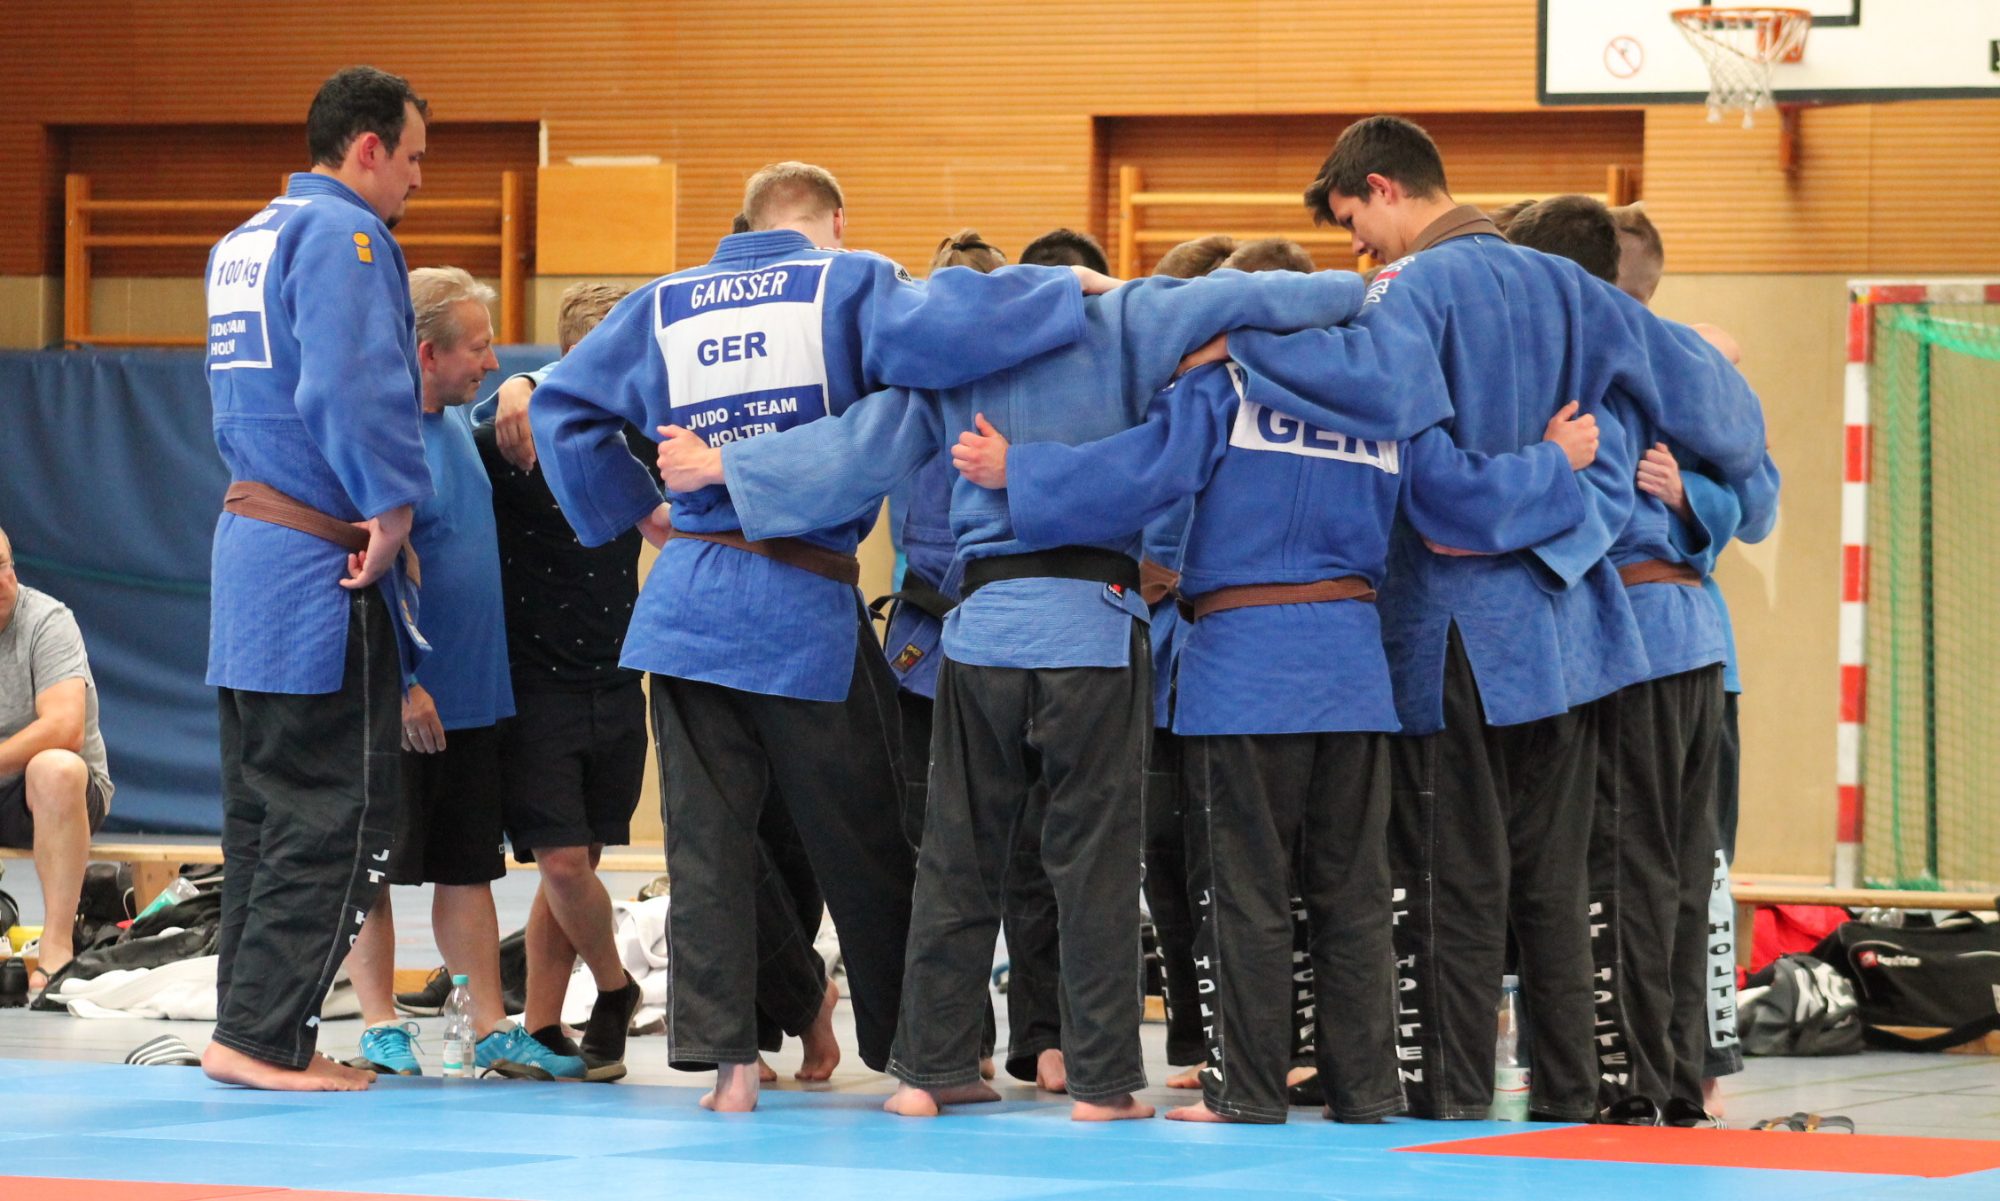 Judo-Team Holten